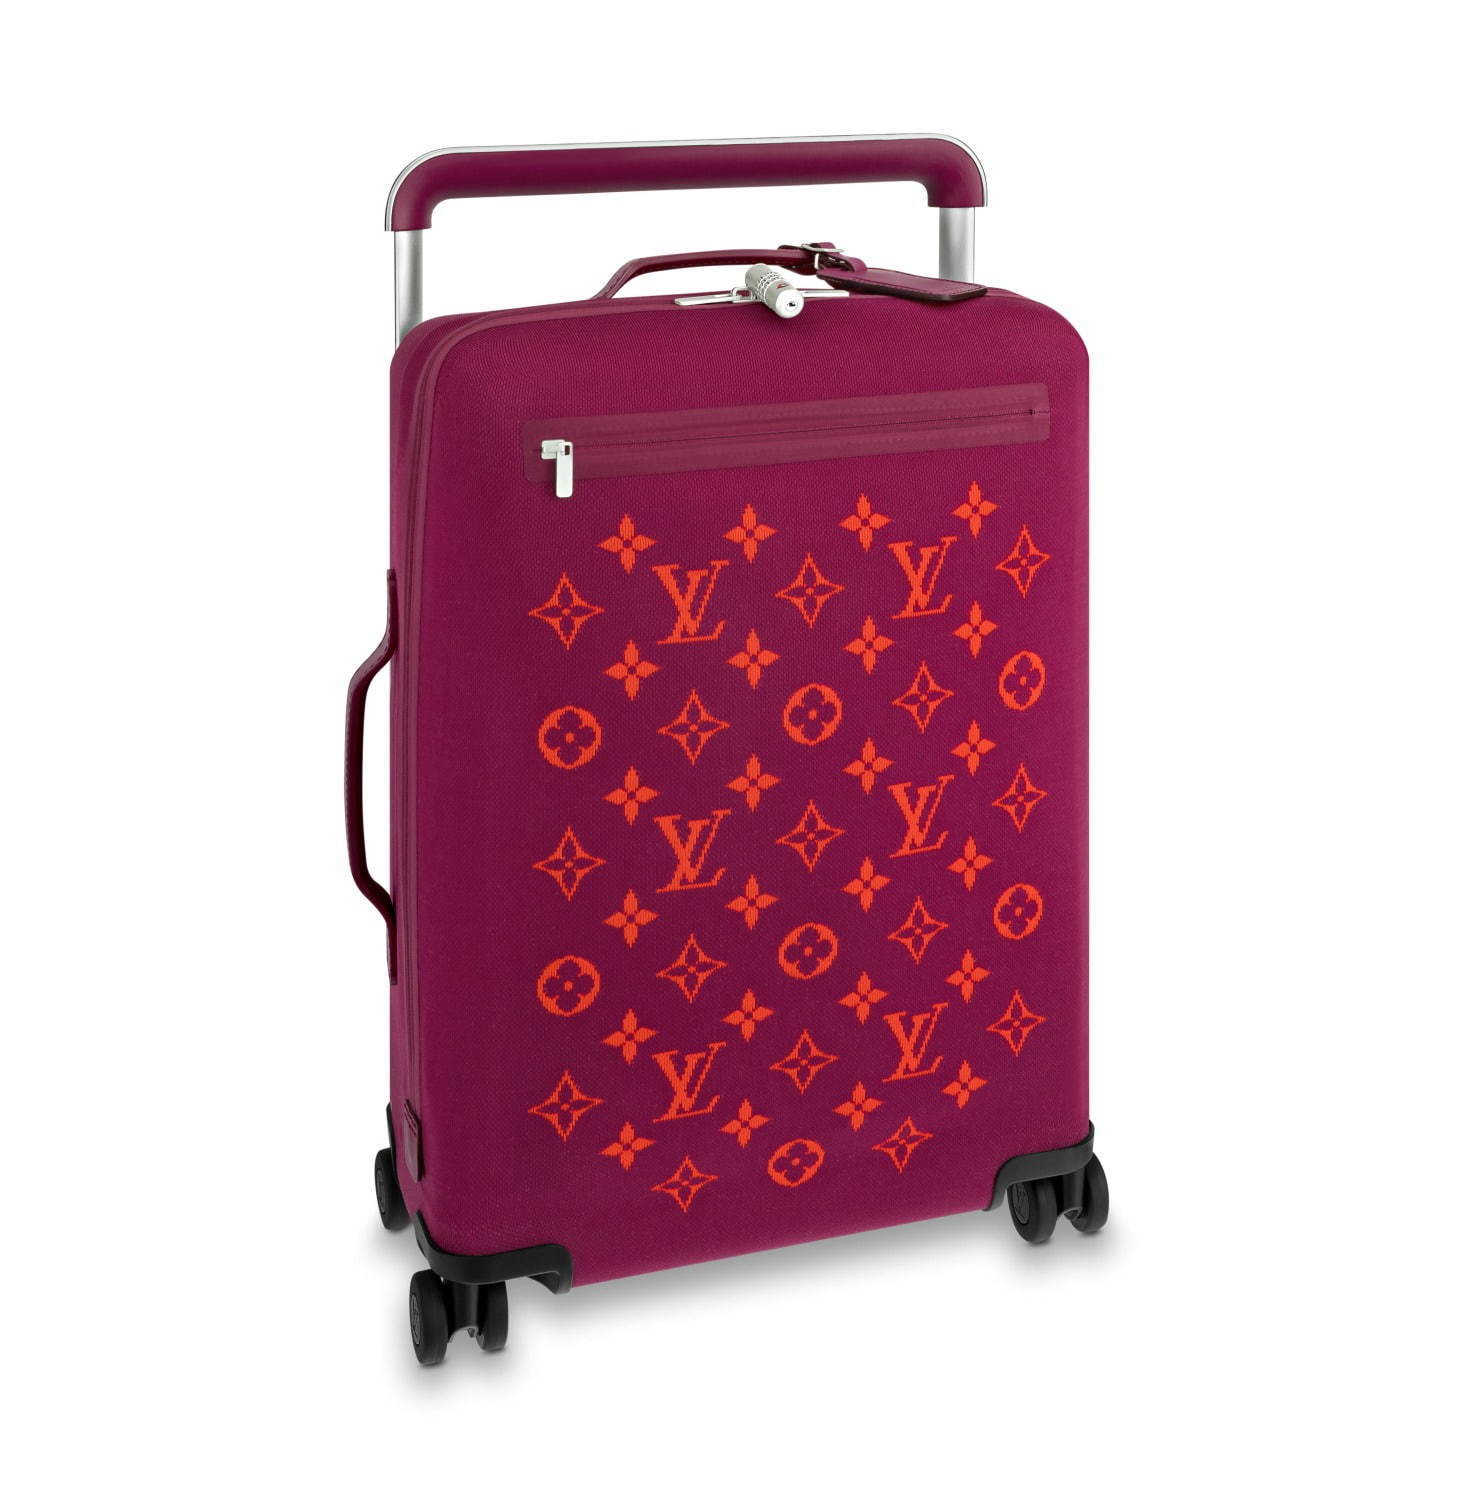 ルイ ヴィトン新作スーツケース ホライゾン ソフト モノグラム ニット 仕様のソフトラゲージ ファッションプレス